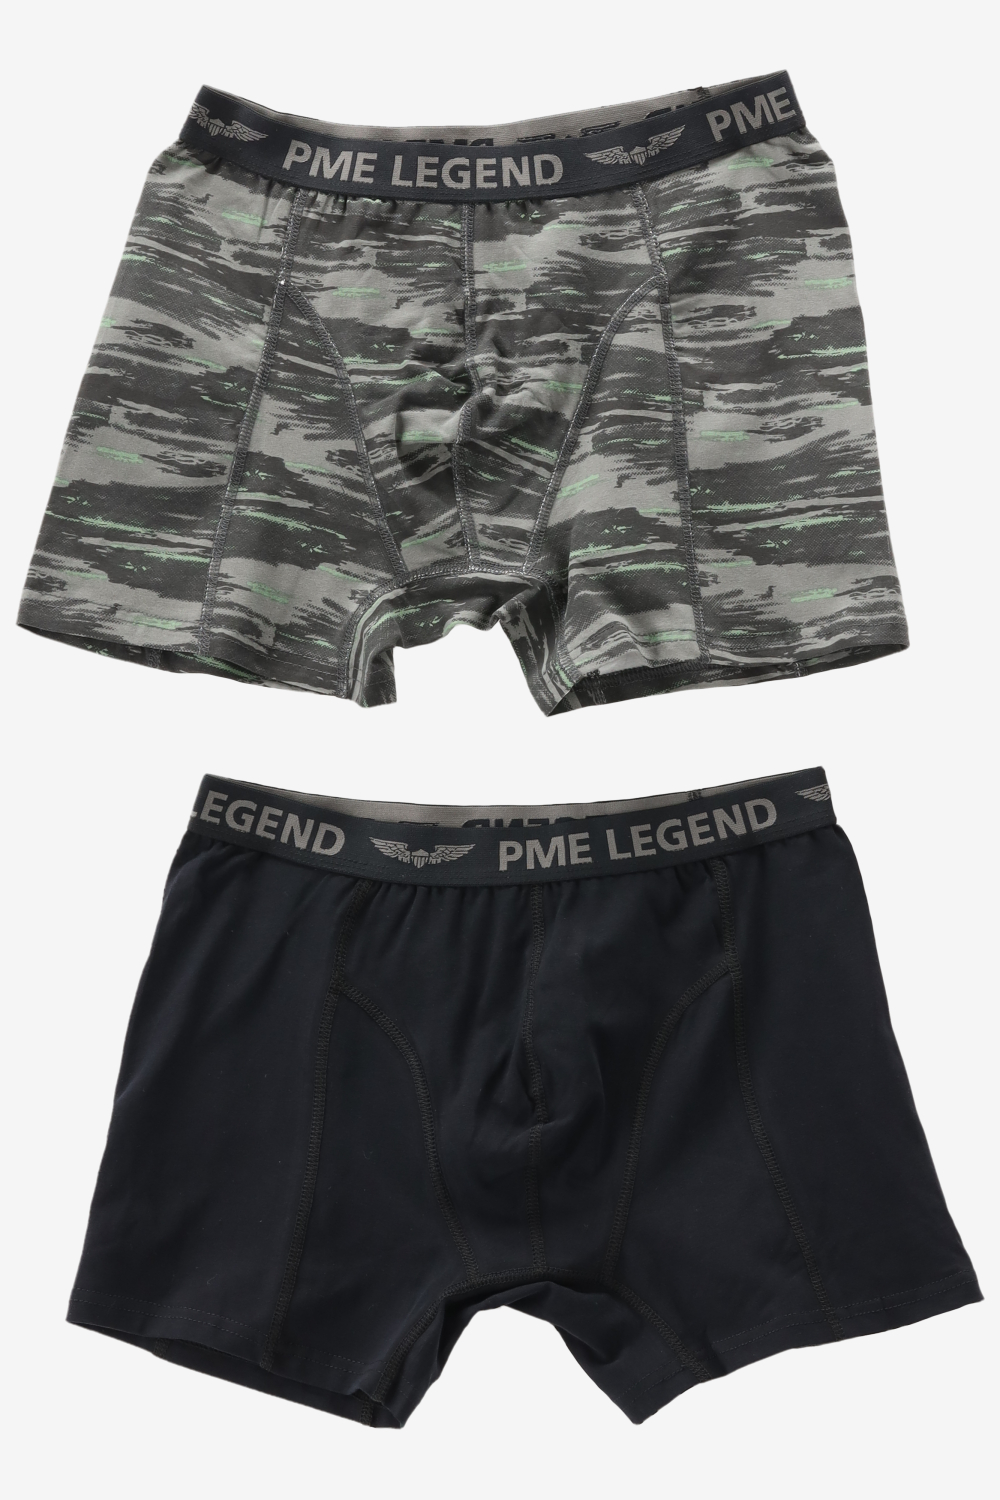 Pme legend underwear maat 3XL